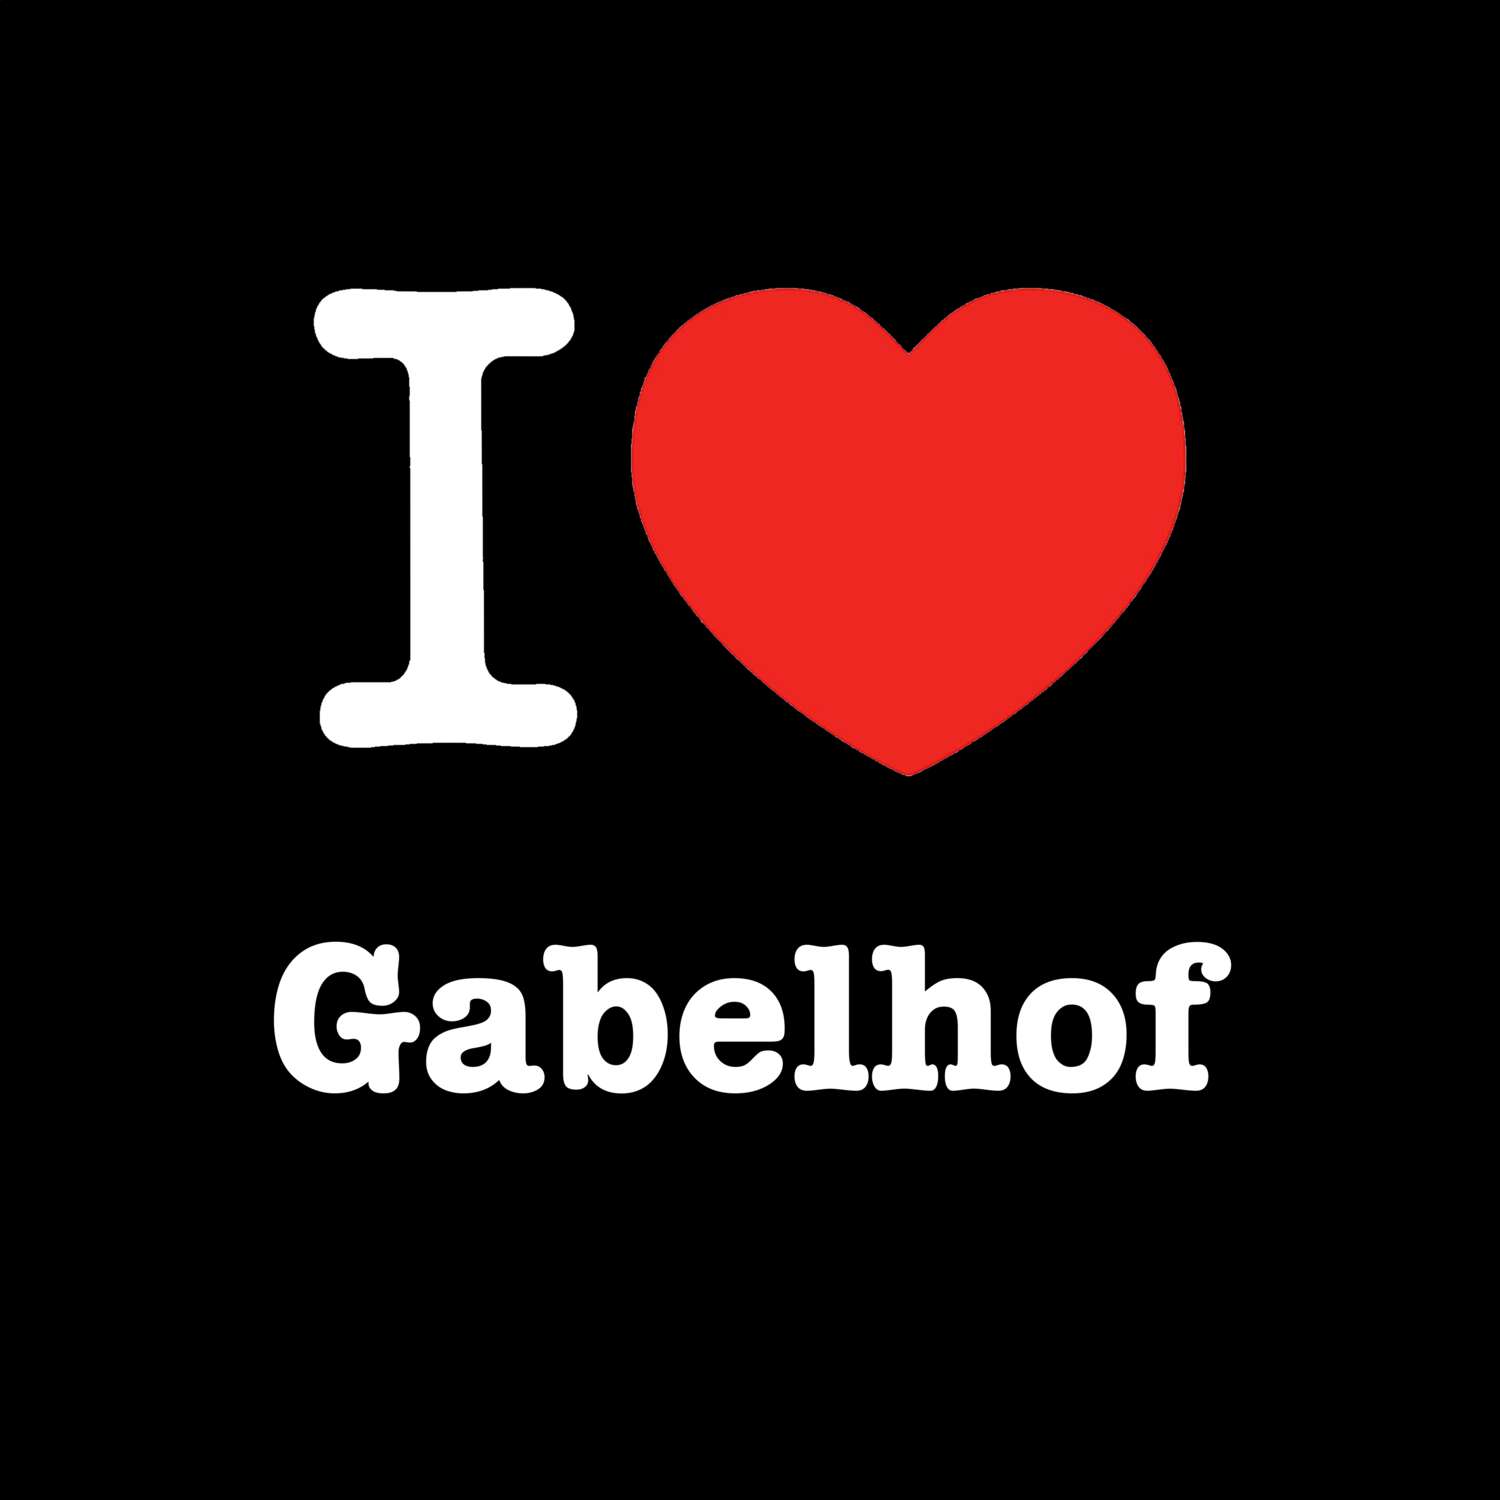 Gabelhof T-Shirt »I love«